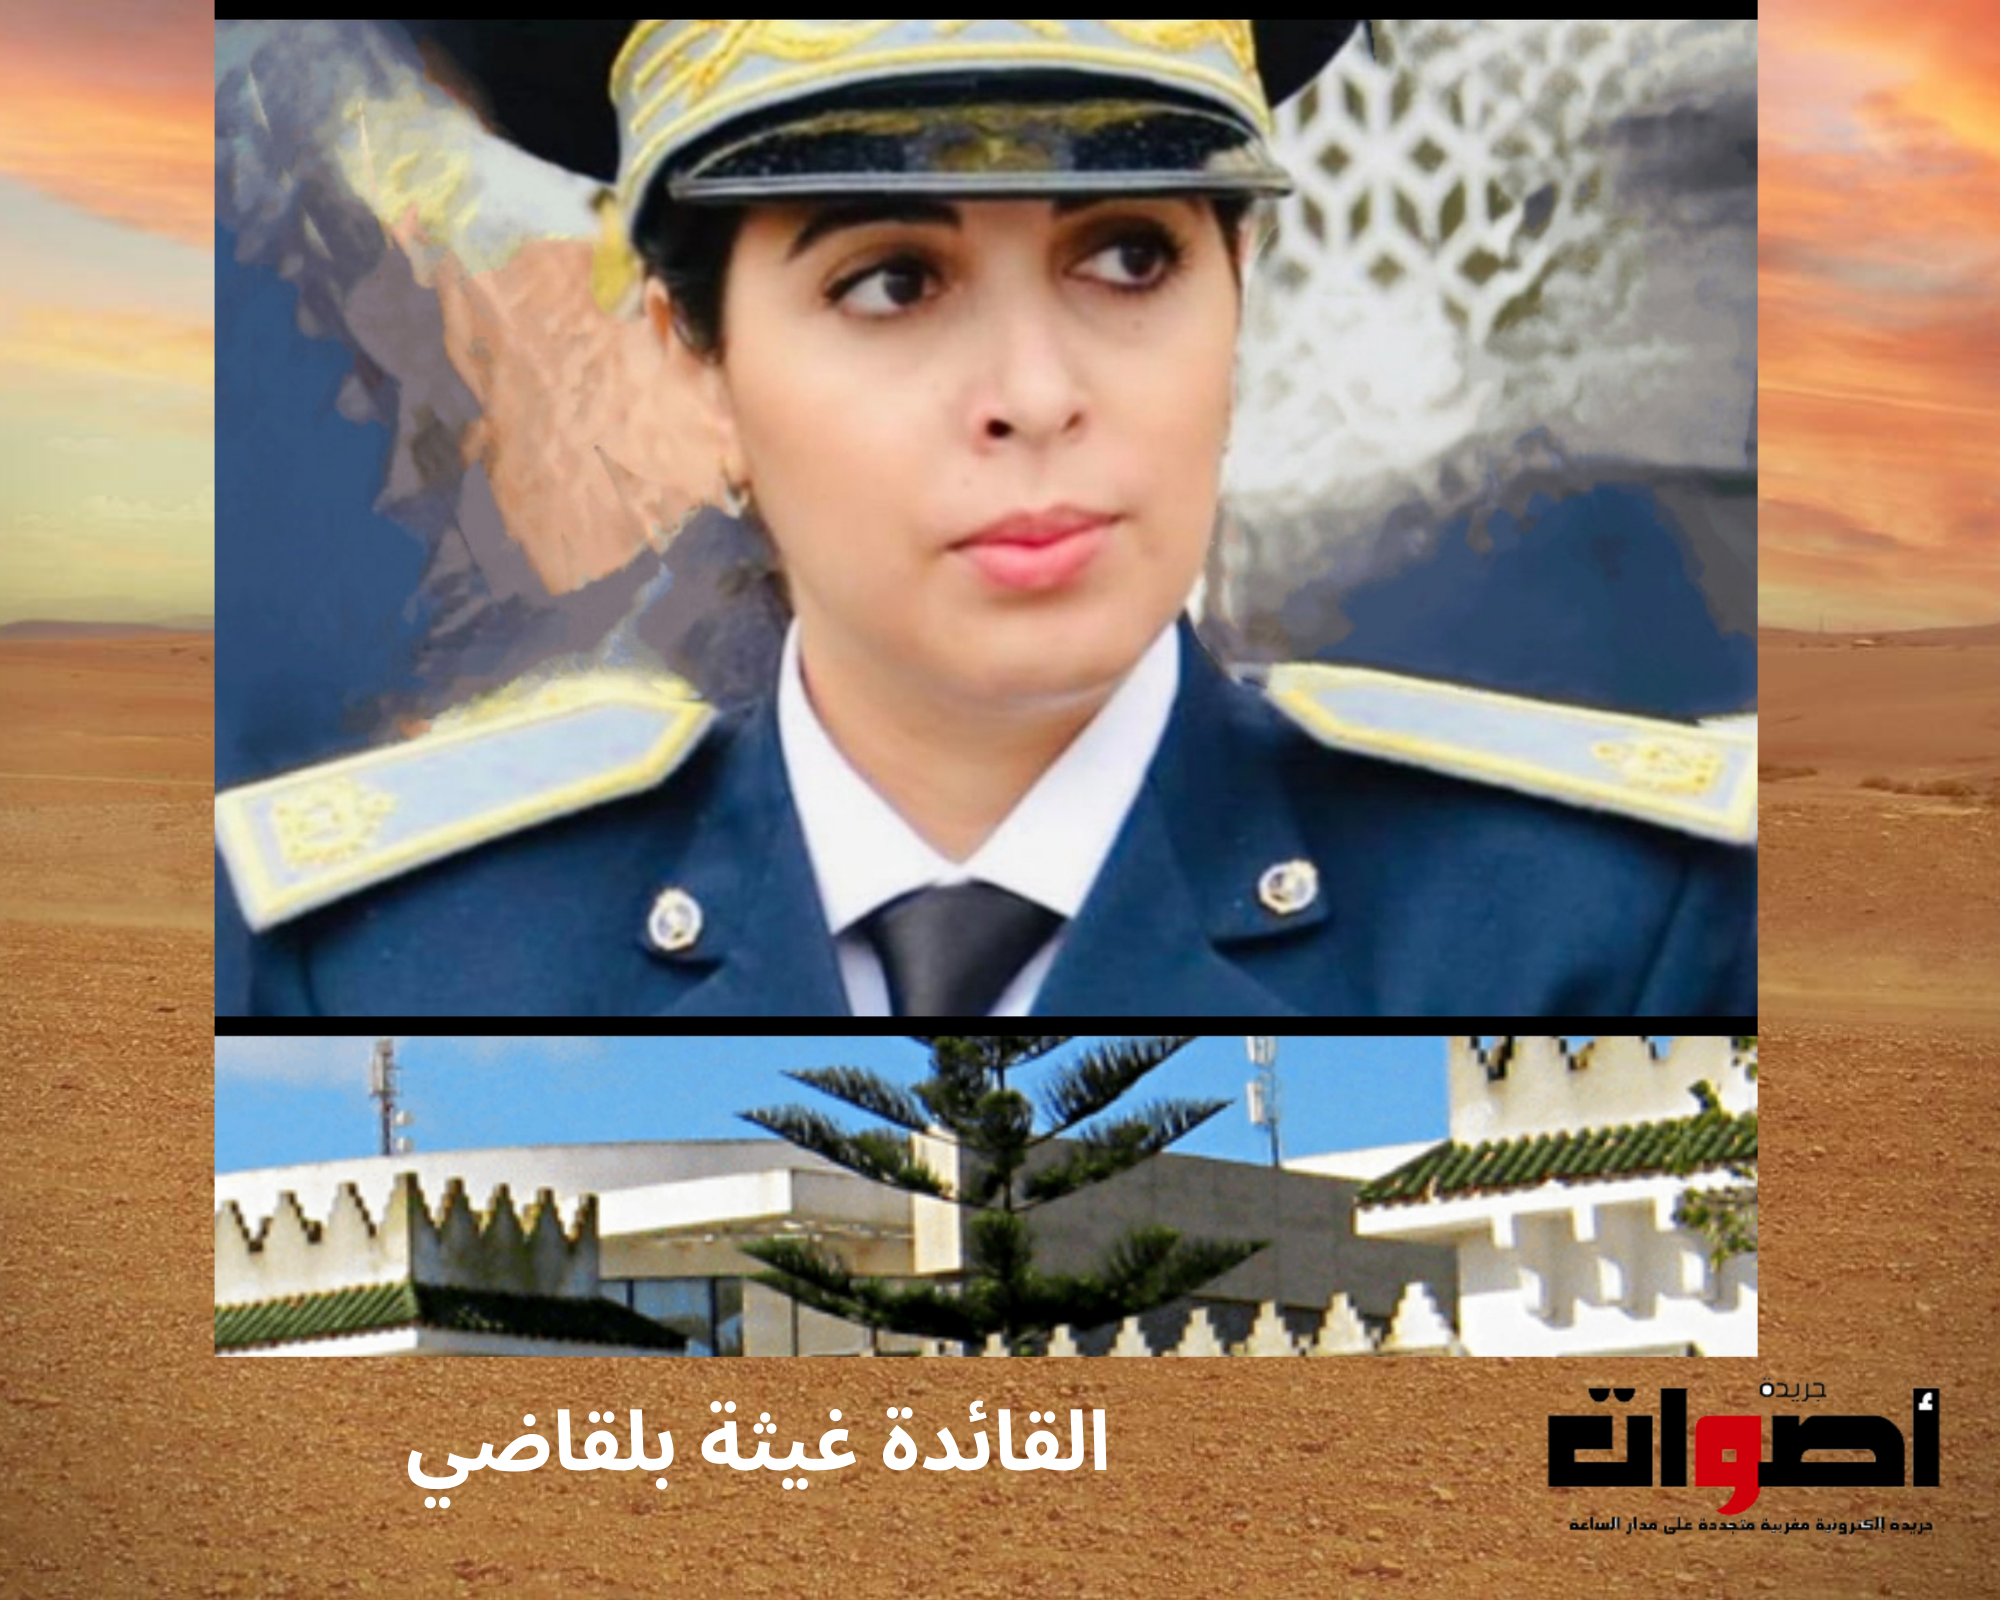 تعيين "غيثة بلقاضي" على رأس إحدى القيادات الحضرية لإقليم العرائش قادمة من الدار البيضاء